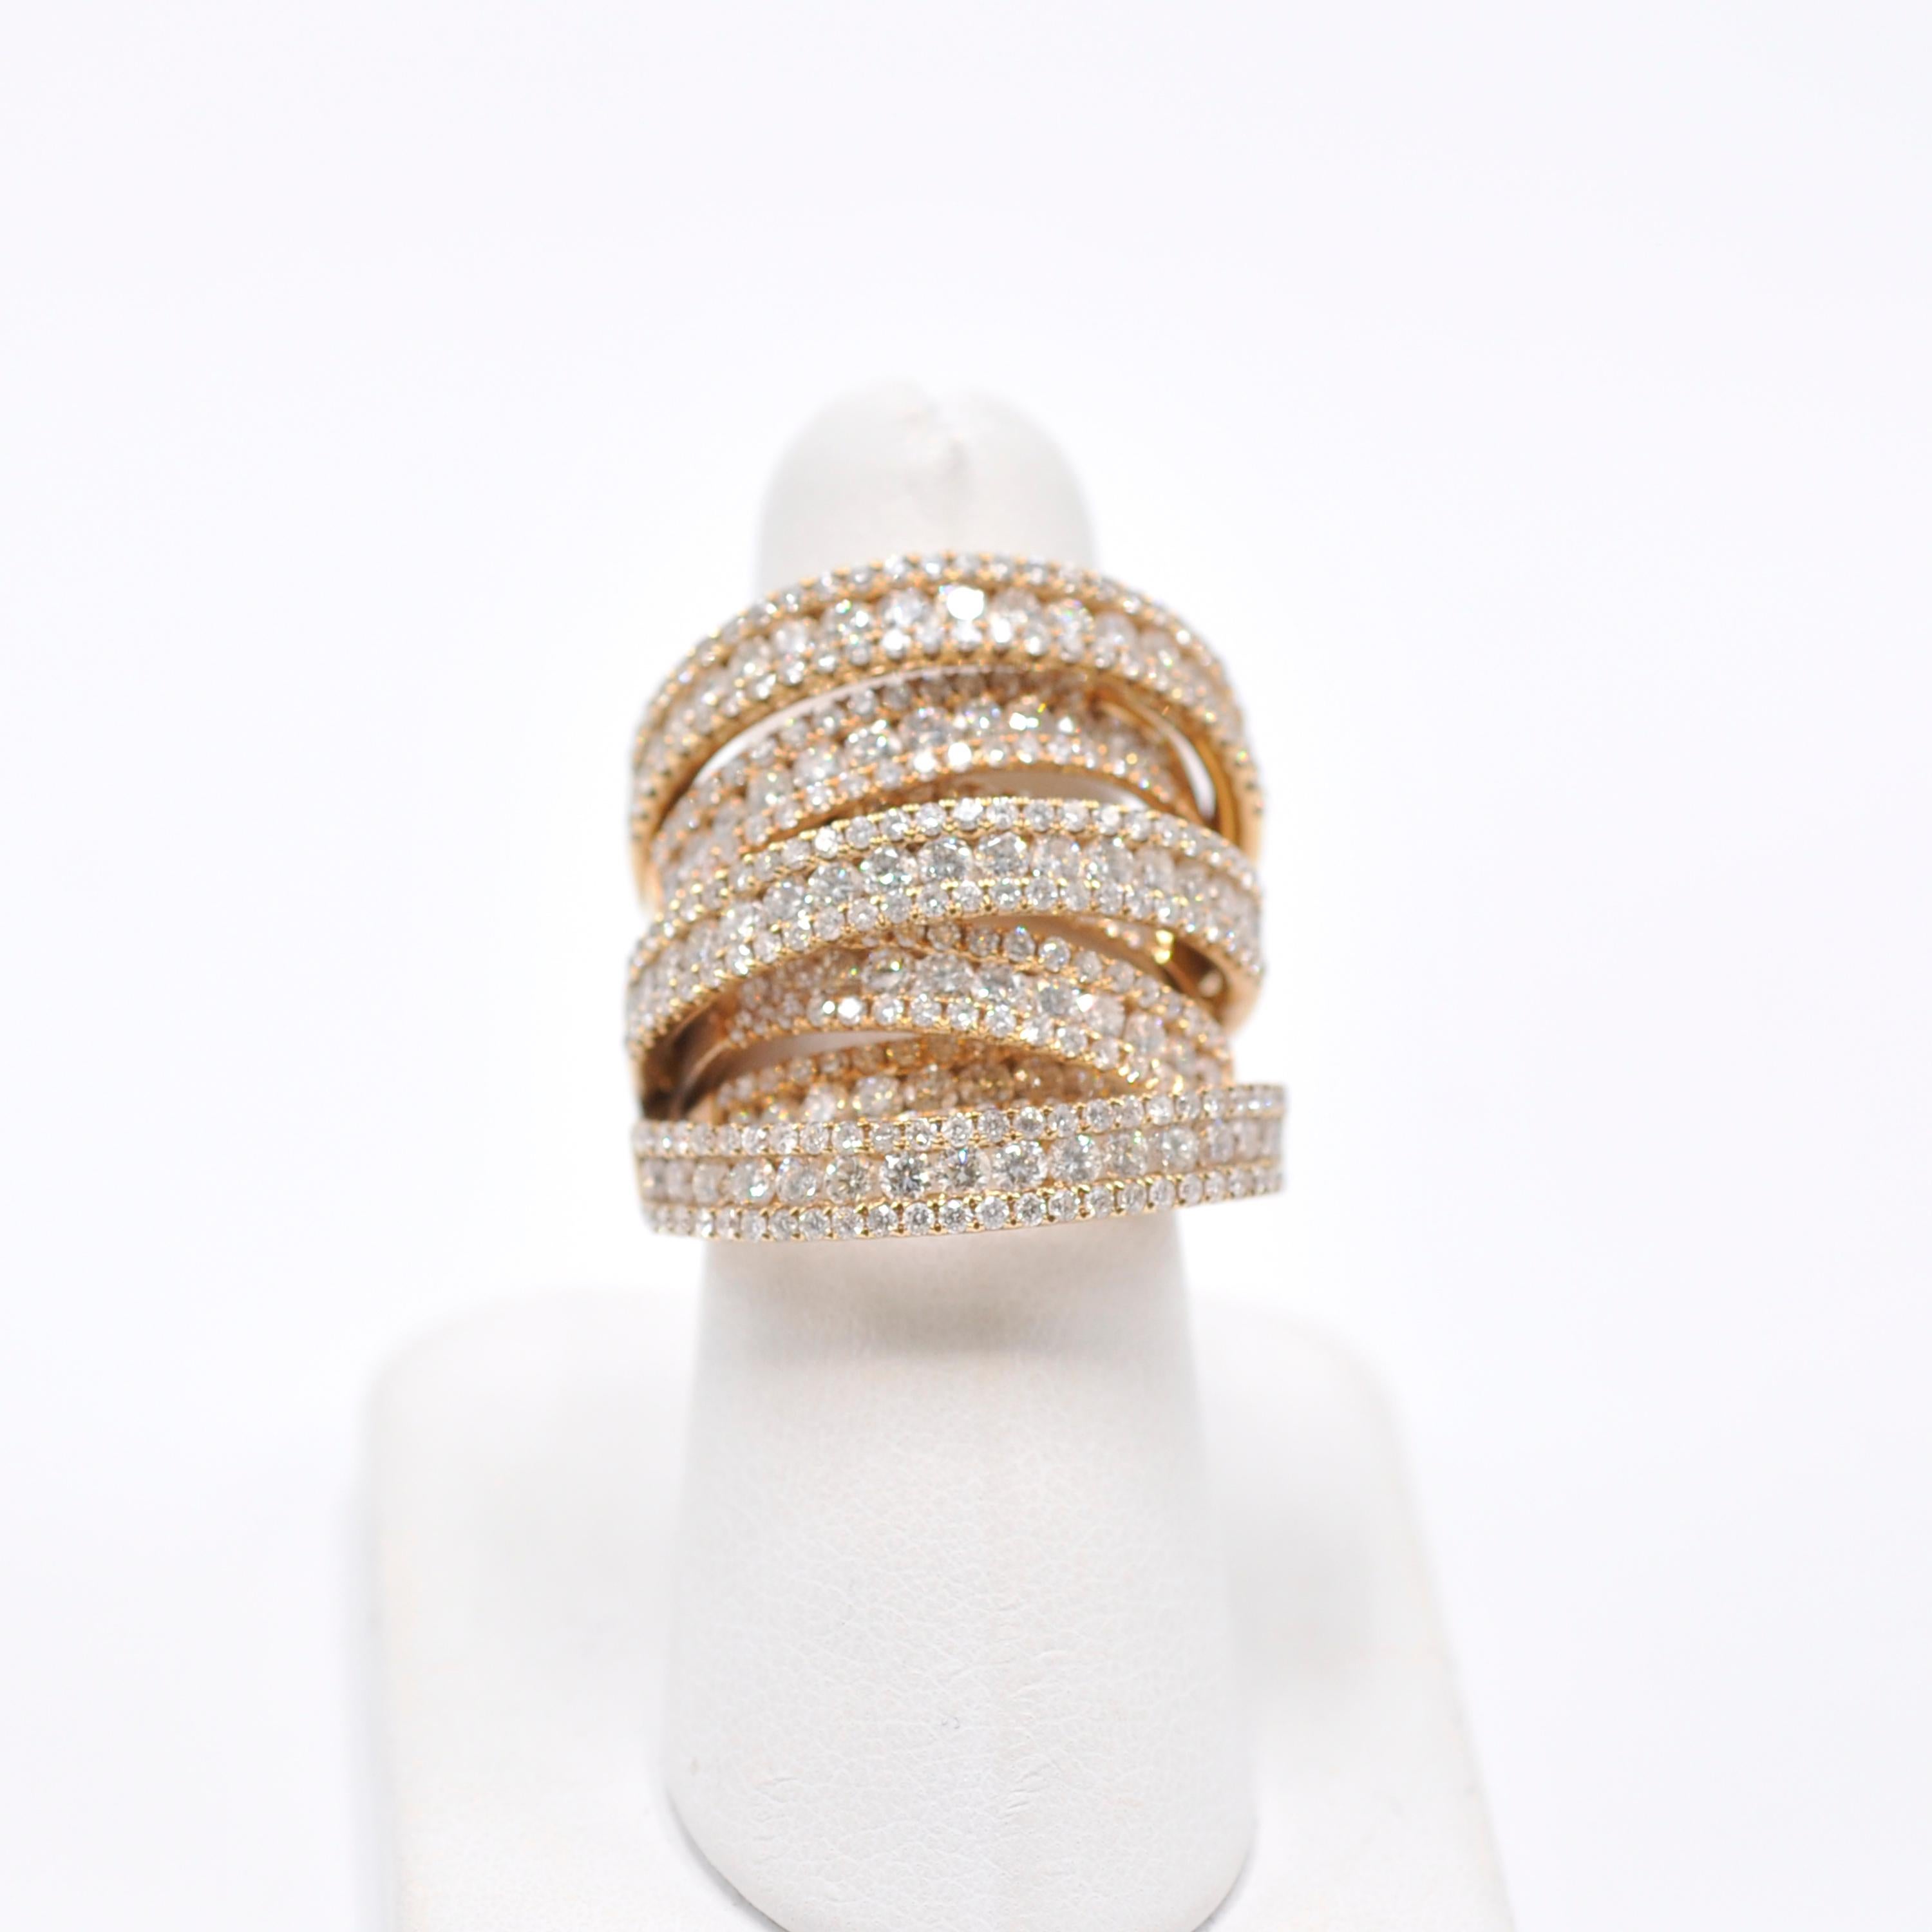 Diese kantige Version des Diamantbandes überschneidet sich mit sieben Bändern aus 18 Karat Gelbgold mit insgesamt 8 CTS Diamanten im Rundschliff. Die Bänder verjüngen sich unter dem Finger, was diesen Ring vielseitig einsetzbar macht. Tragen Sie es